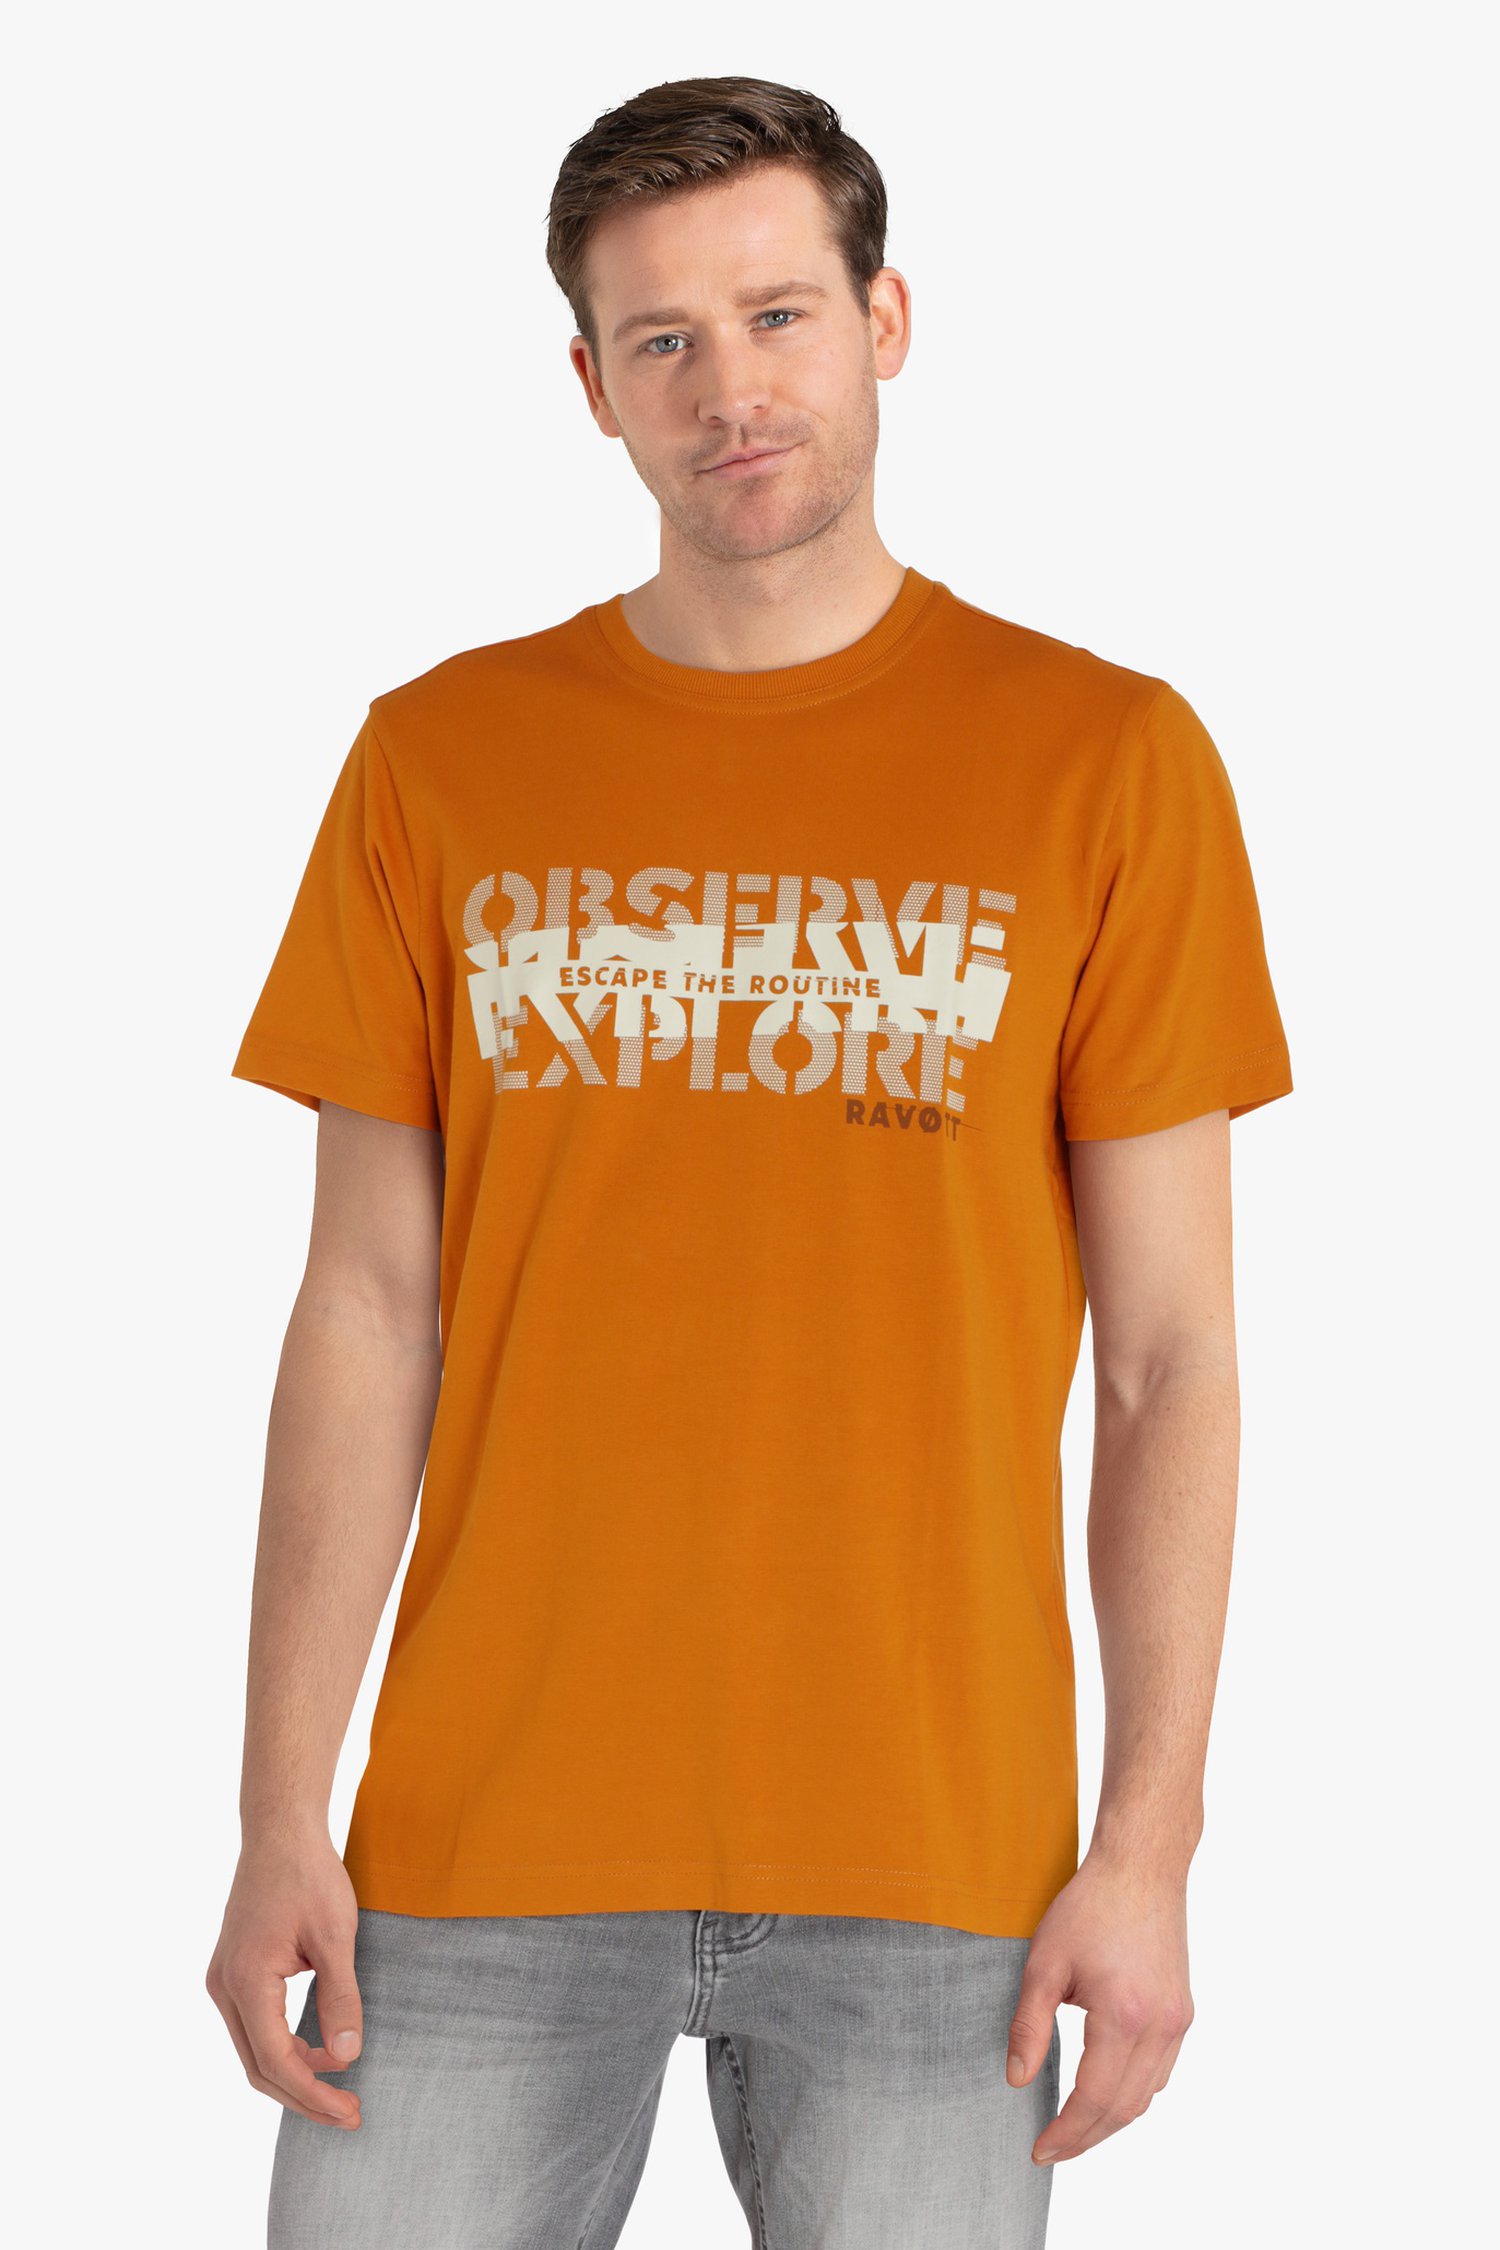 T-shirt orange à imprimé blanc de Ravøtt pour Hommes